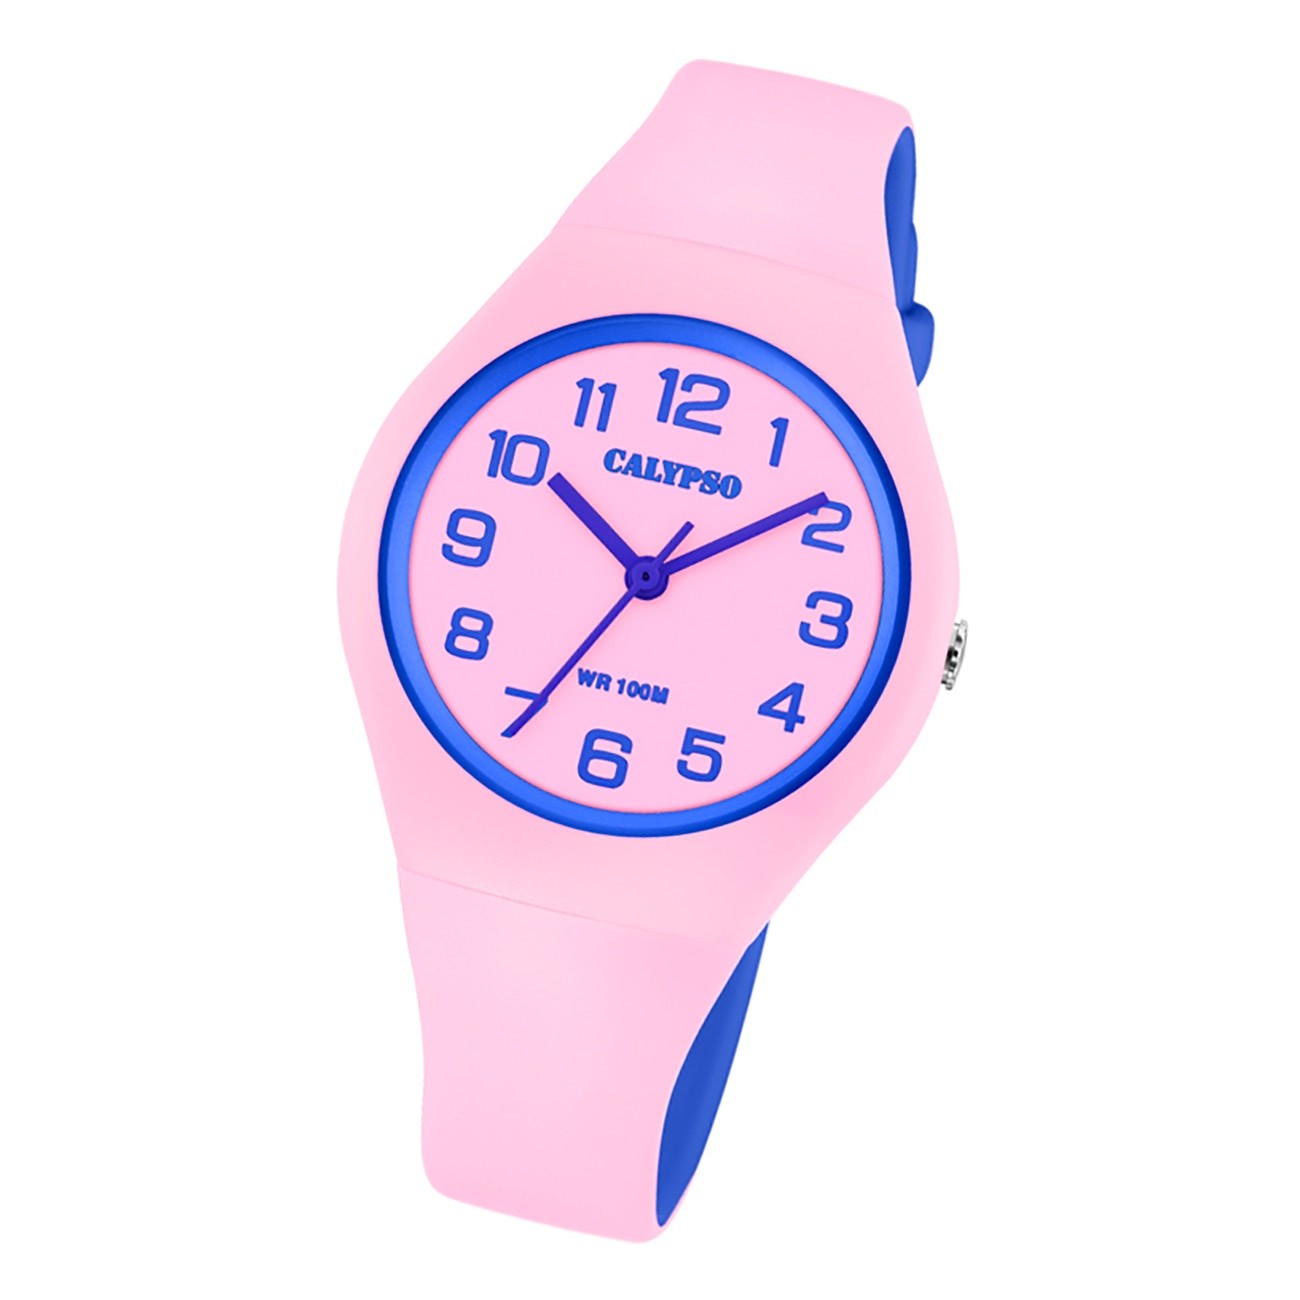 Calypso Damen Jugend Armbanduhr Fashion K5777/1 Analog Kunststoff rosa UK5777/1